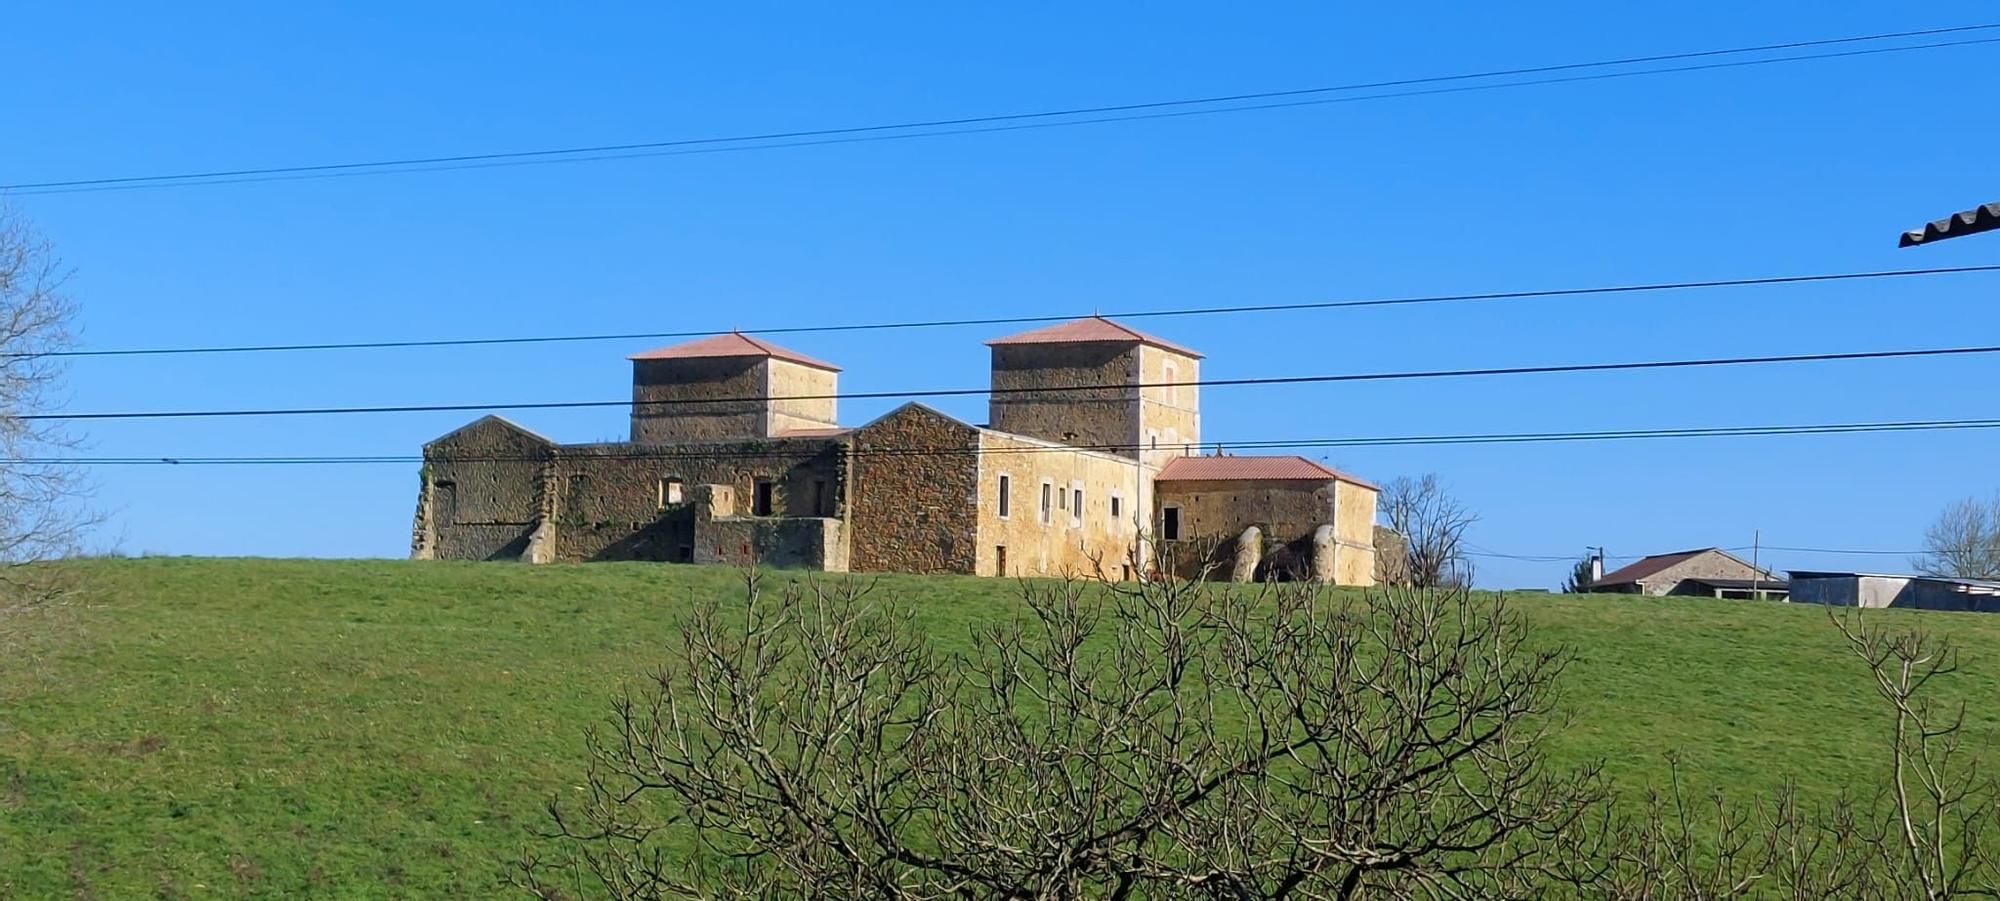 El palacio de Villanueva, cuatro siglos haciendo historia en Llanera